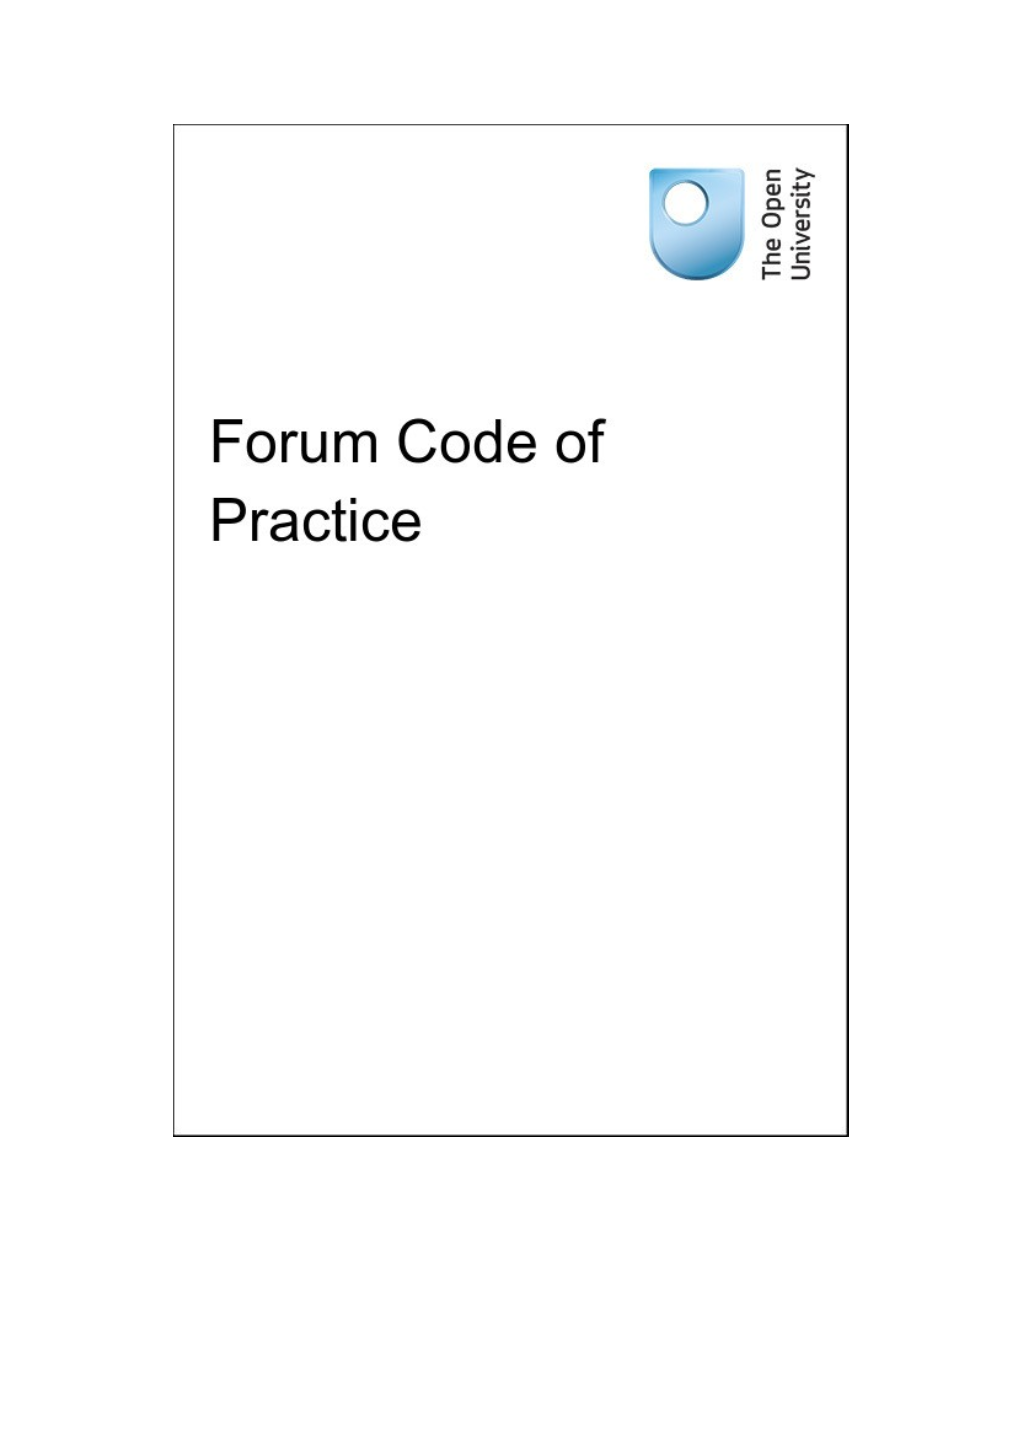 Forum Code of Practice